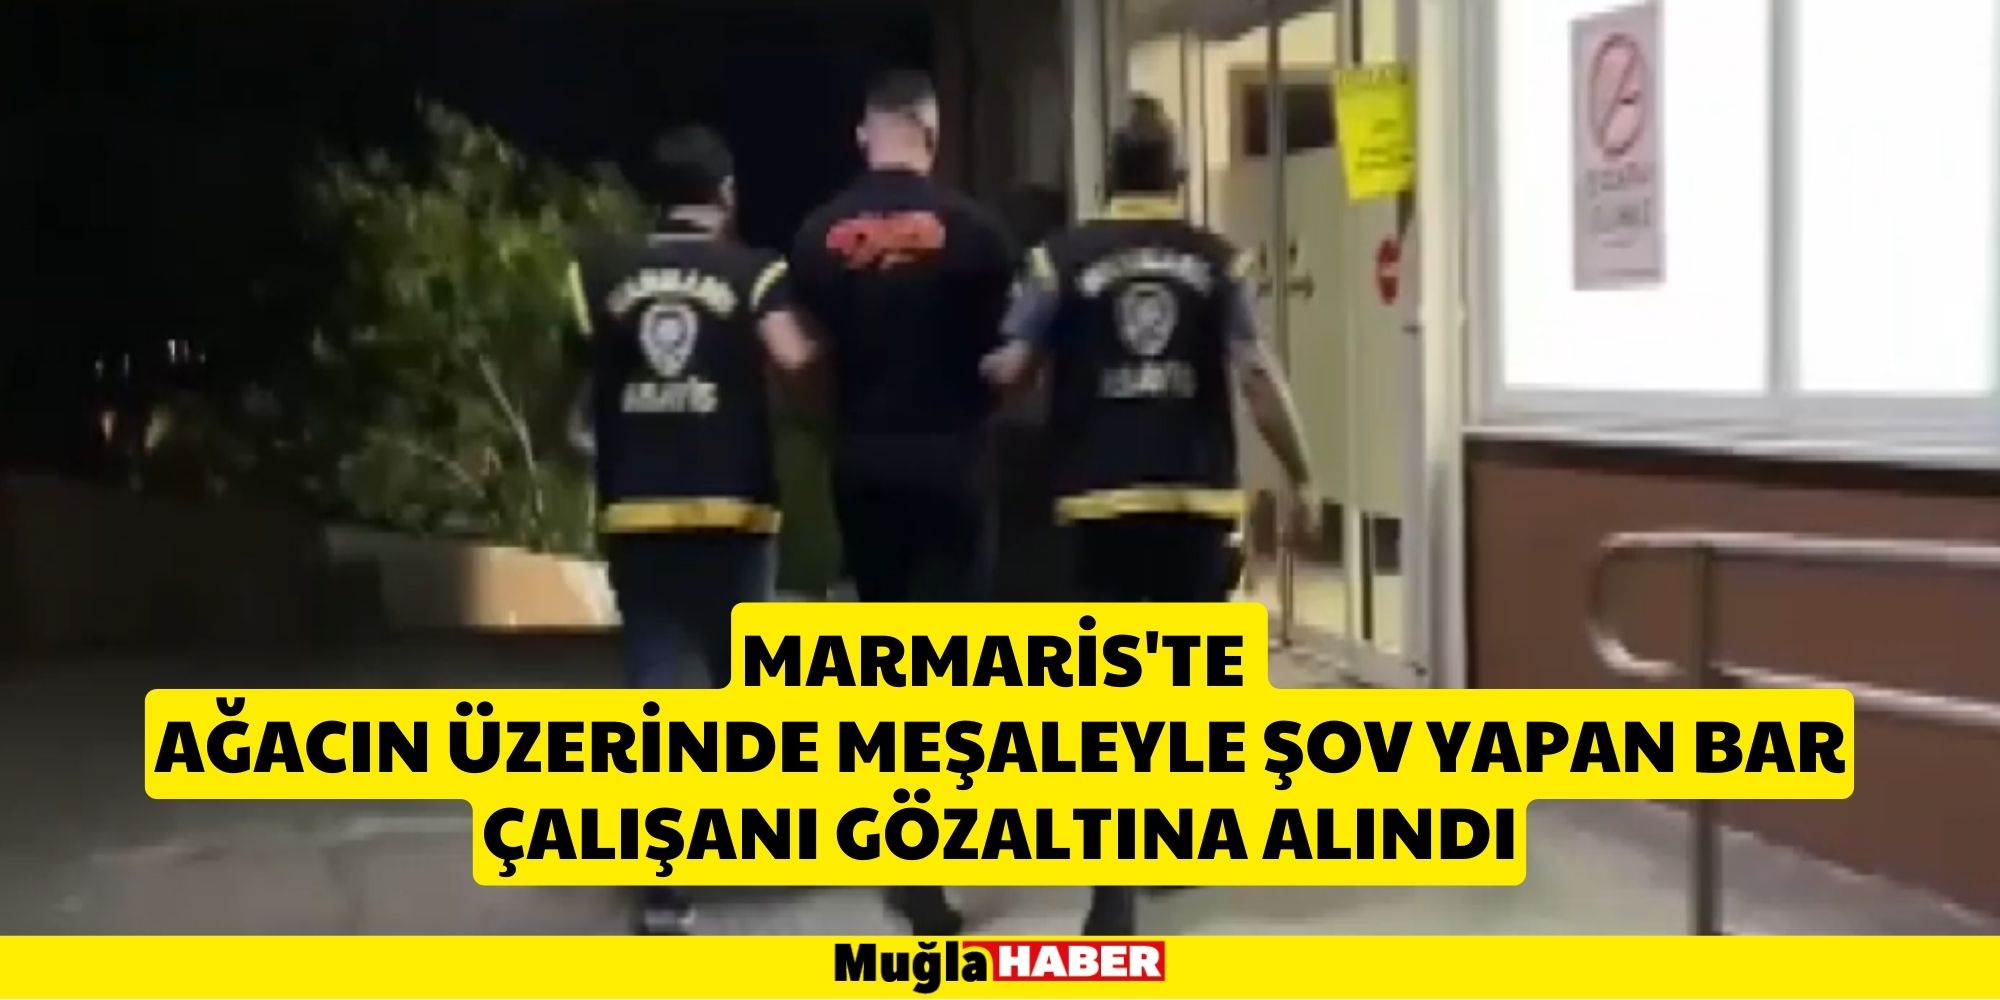 Marmaris'te ağacın üzerinde meşaleyle şov yapan bar çalışanı gözaltına alındı